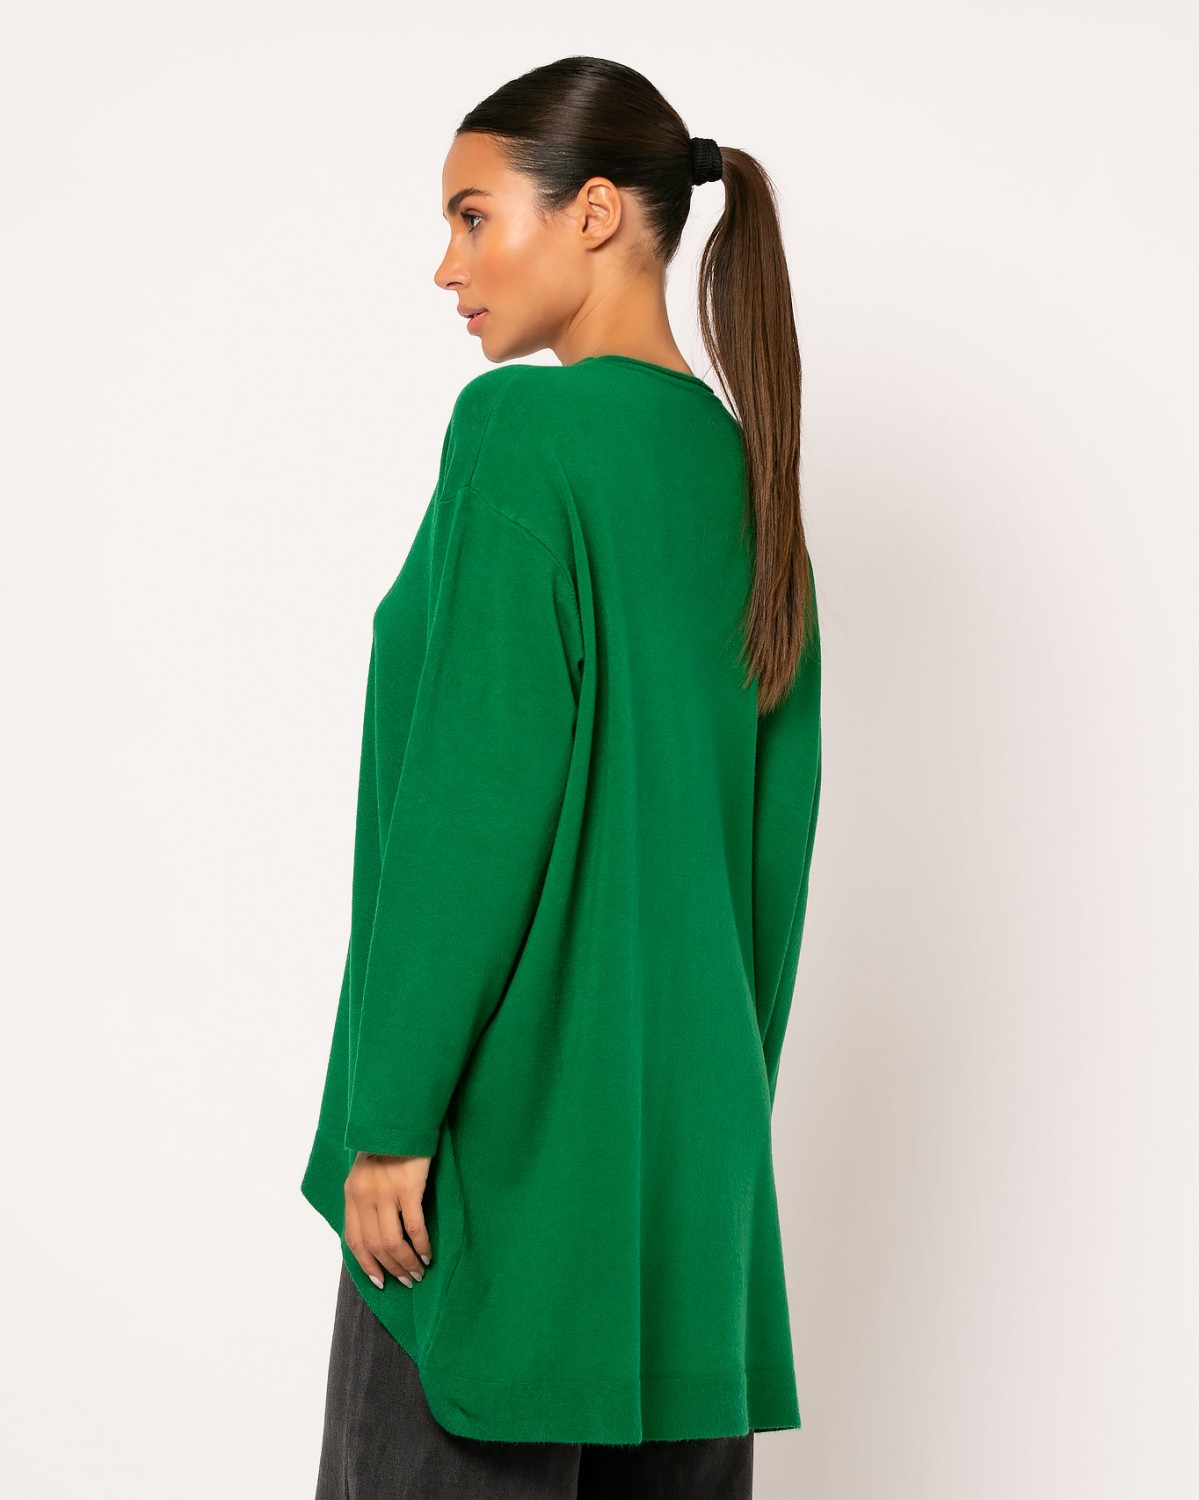 Μπλούζα μακρυμάνικη ψιλό πλεκτό απαλή υφή oversized πιο κοντό μπροστά Πράσινο 